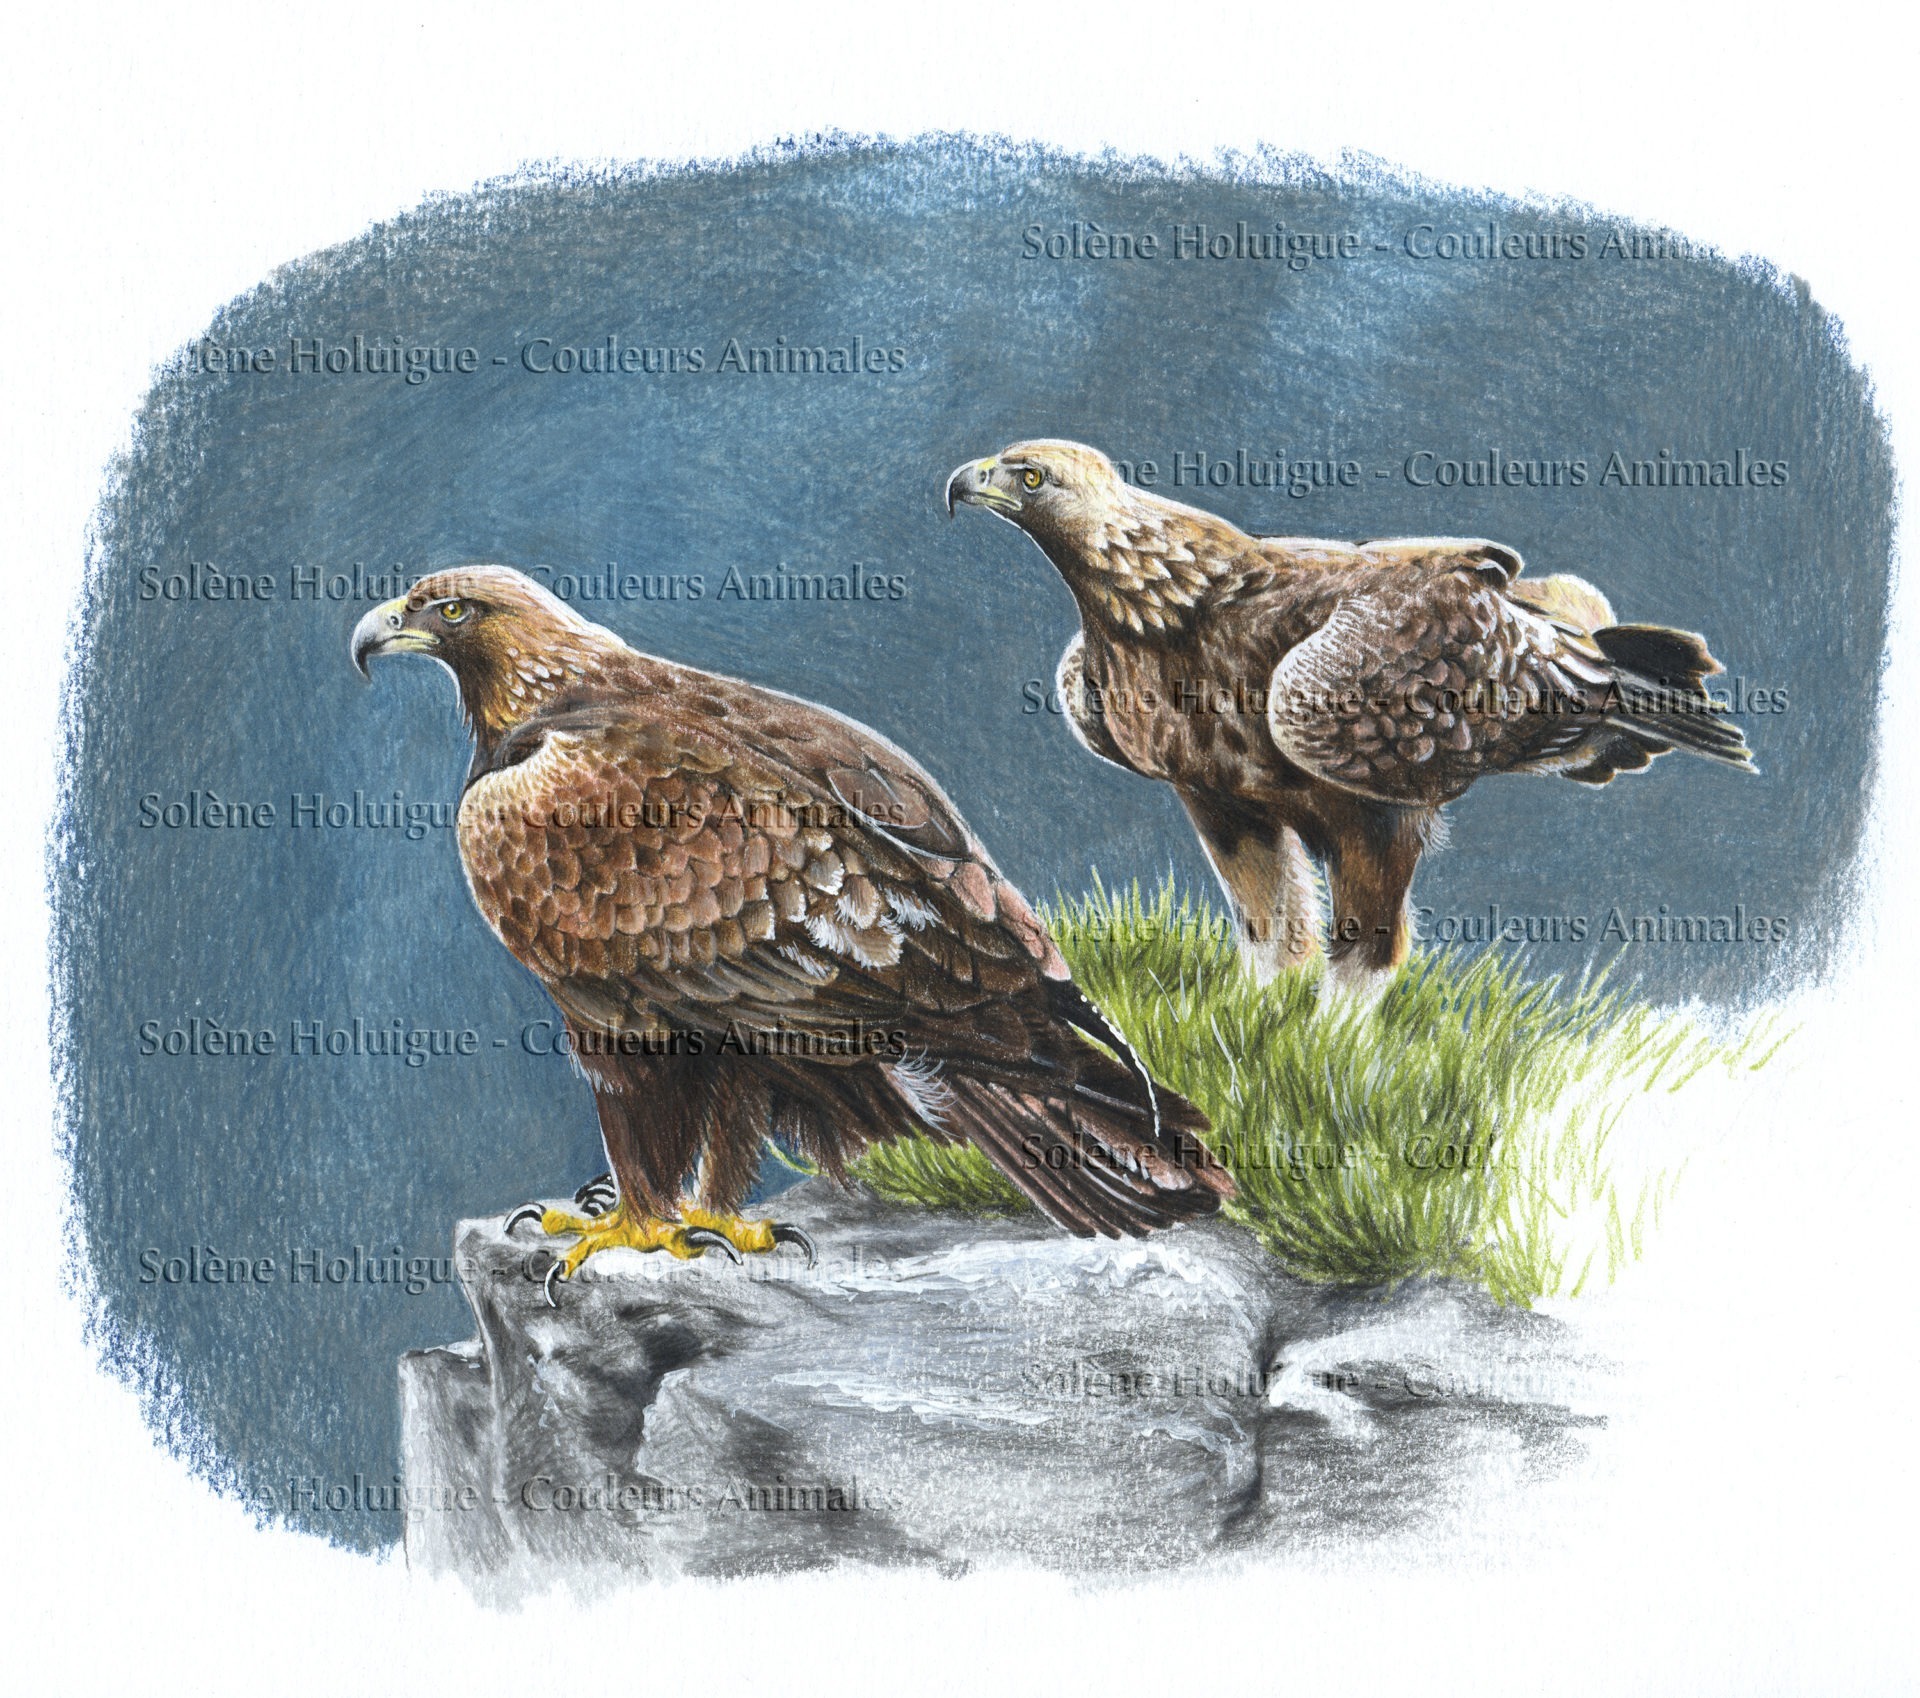 dessin animalier professionnel de deux aigles royaux